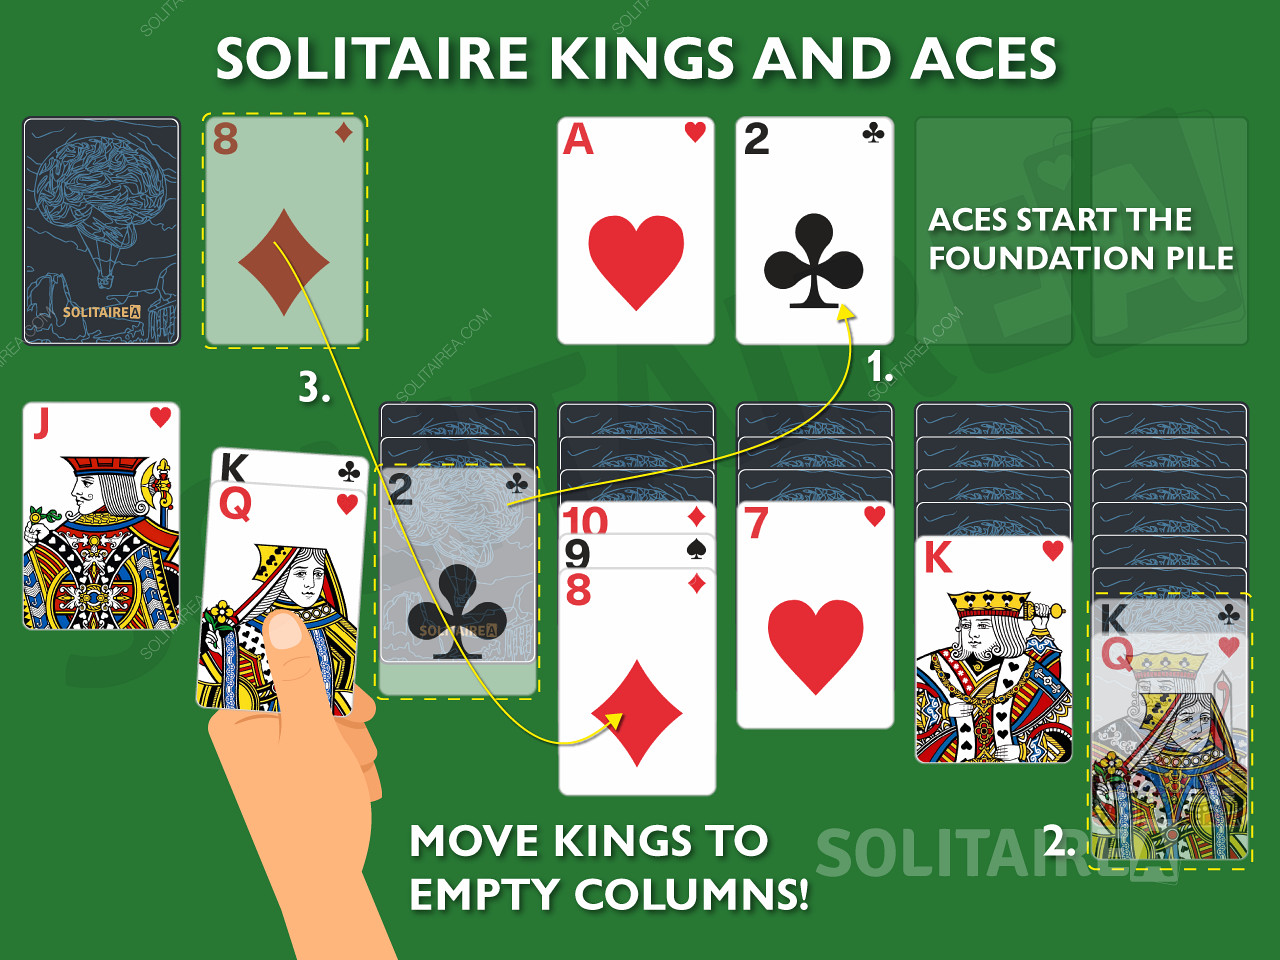 تعتبر أوراق الملوك والأصوص أوراقًا مهمة في لعبة Solitaire حيث يُسمح لها بالحركات الفريدة.